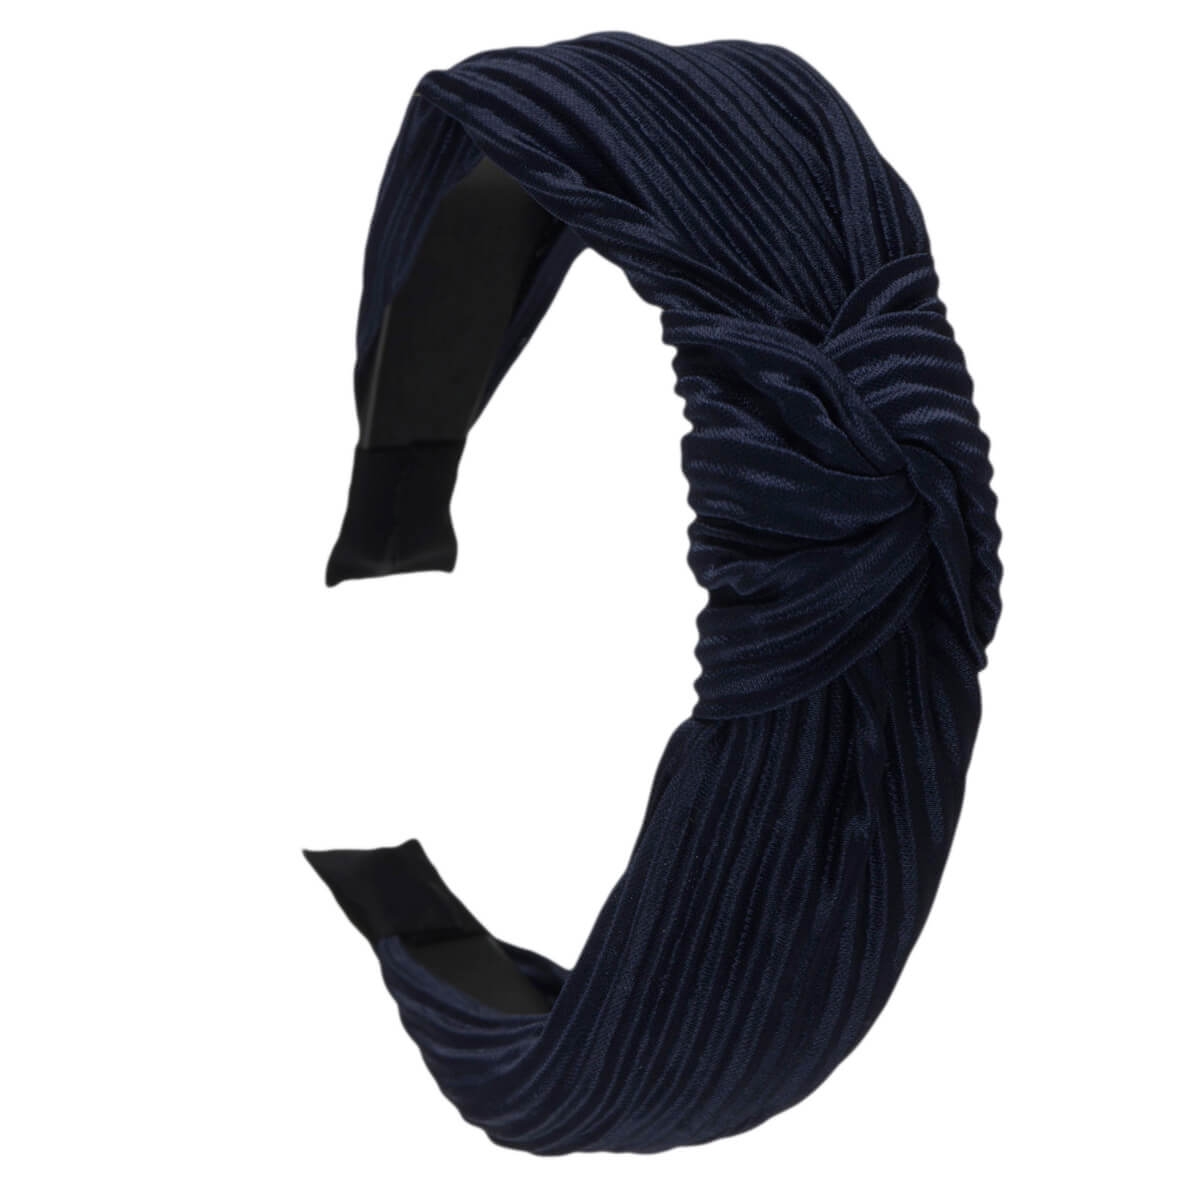 Plissé satin hairband with knot 2,9cm